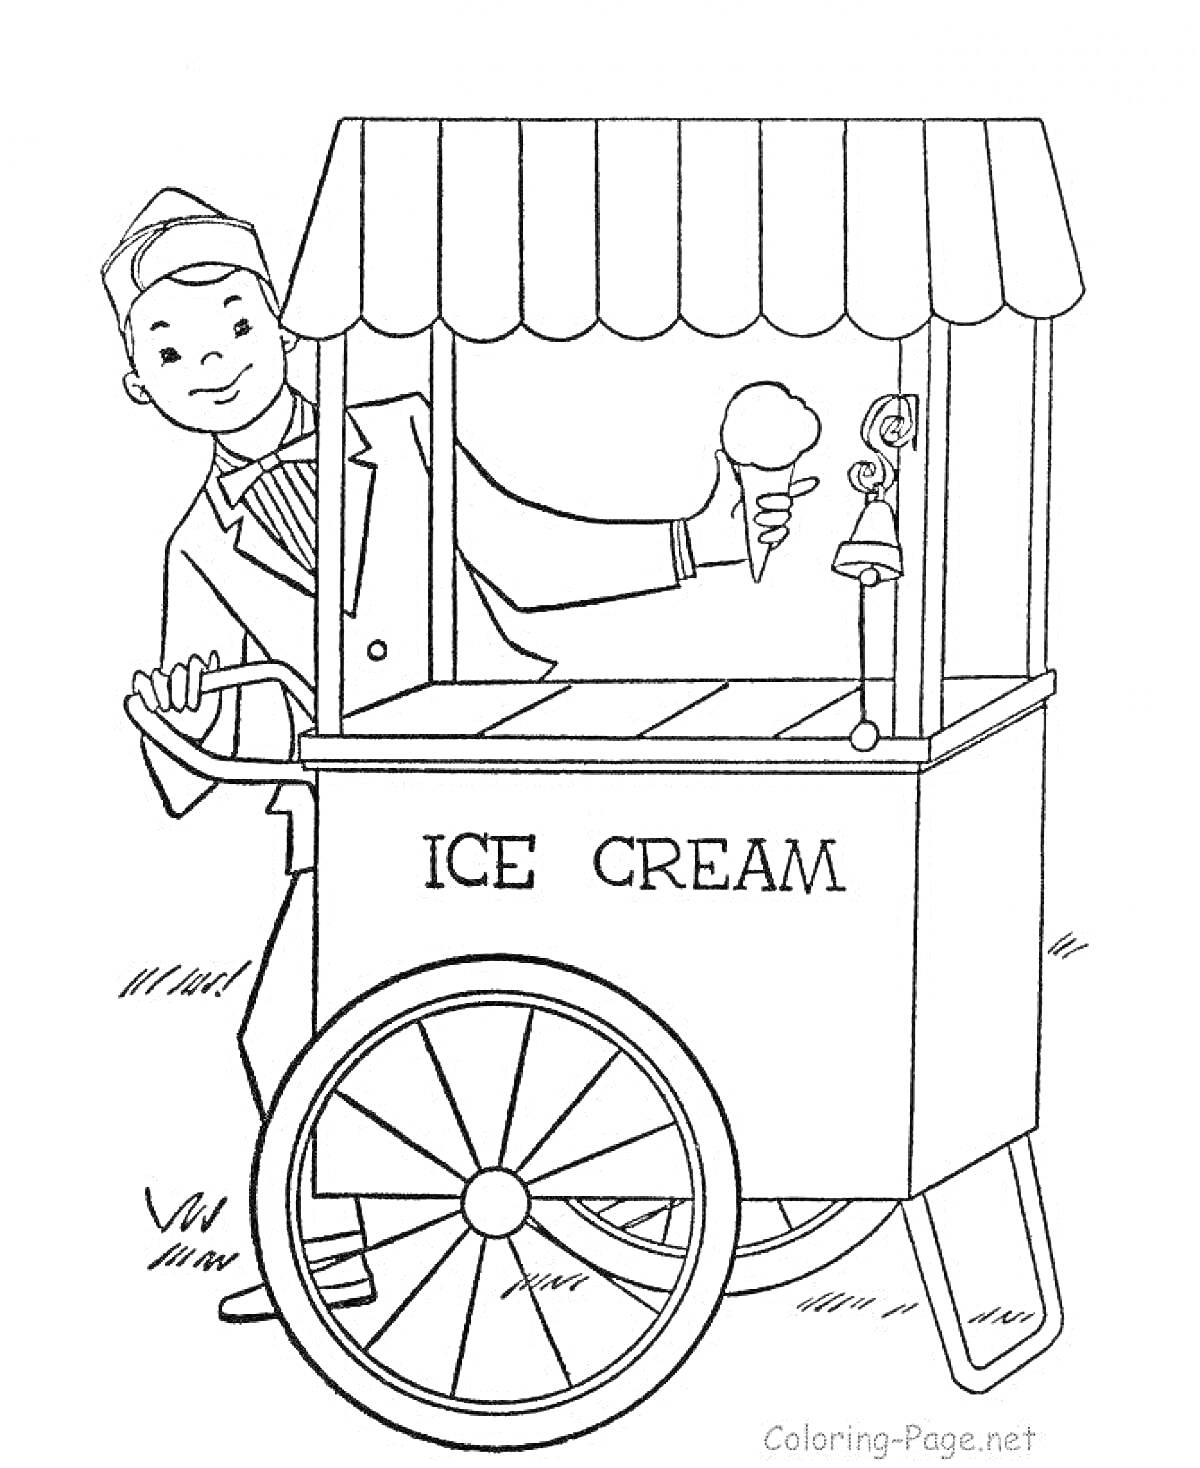 Мороженщик у тележки, держащий мороженое, с колоколом для привлечения клиентов